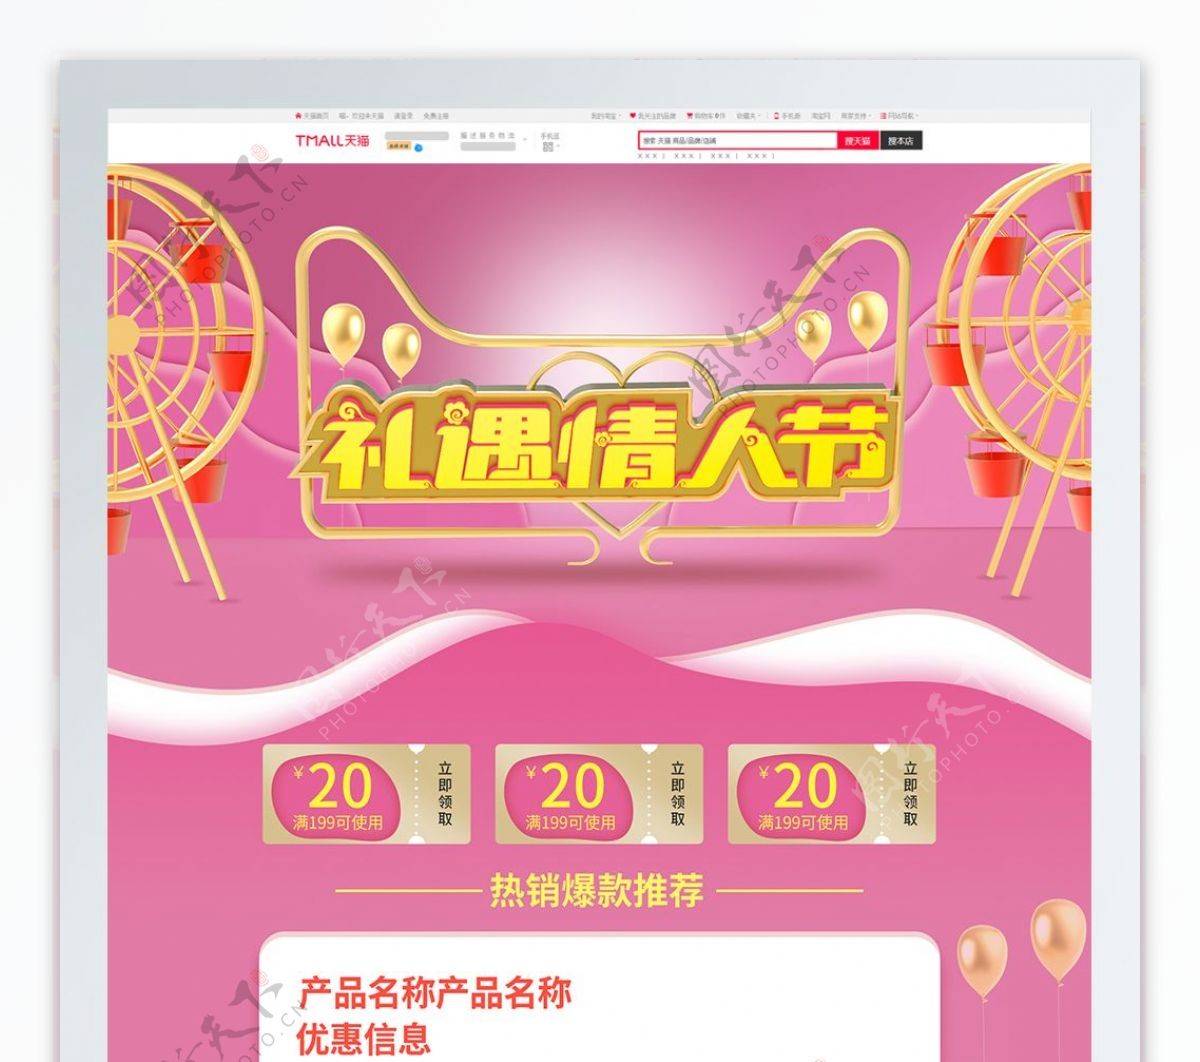 粉色温馨C4D礼遇情人节电商天猫首页模板